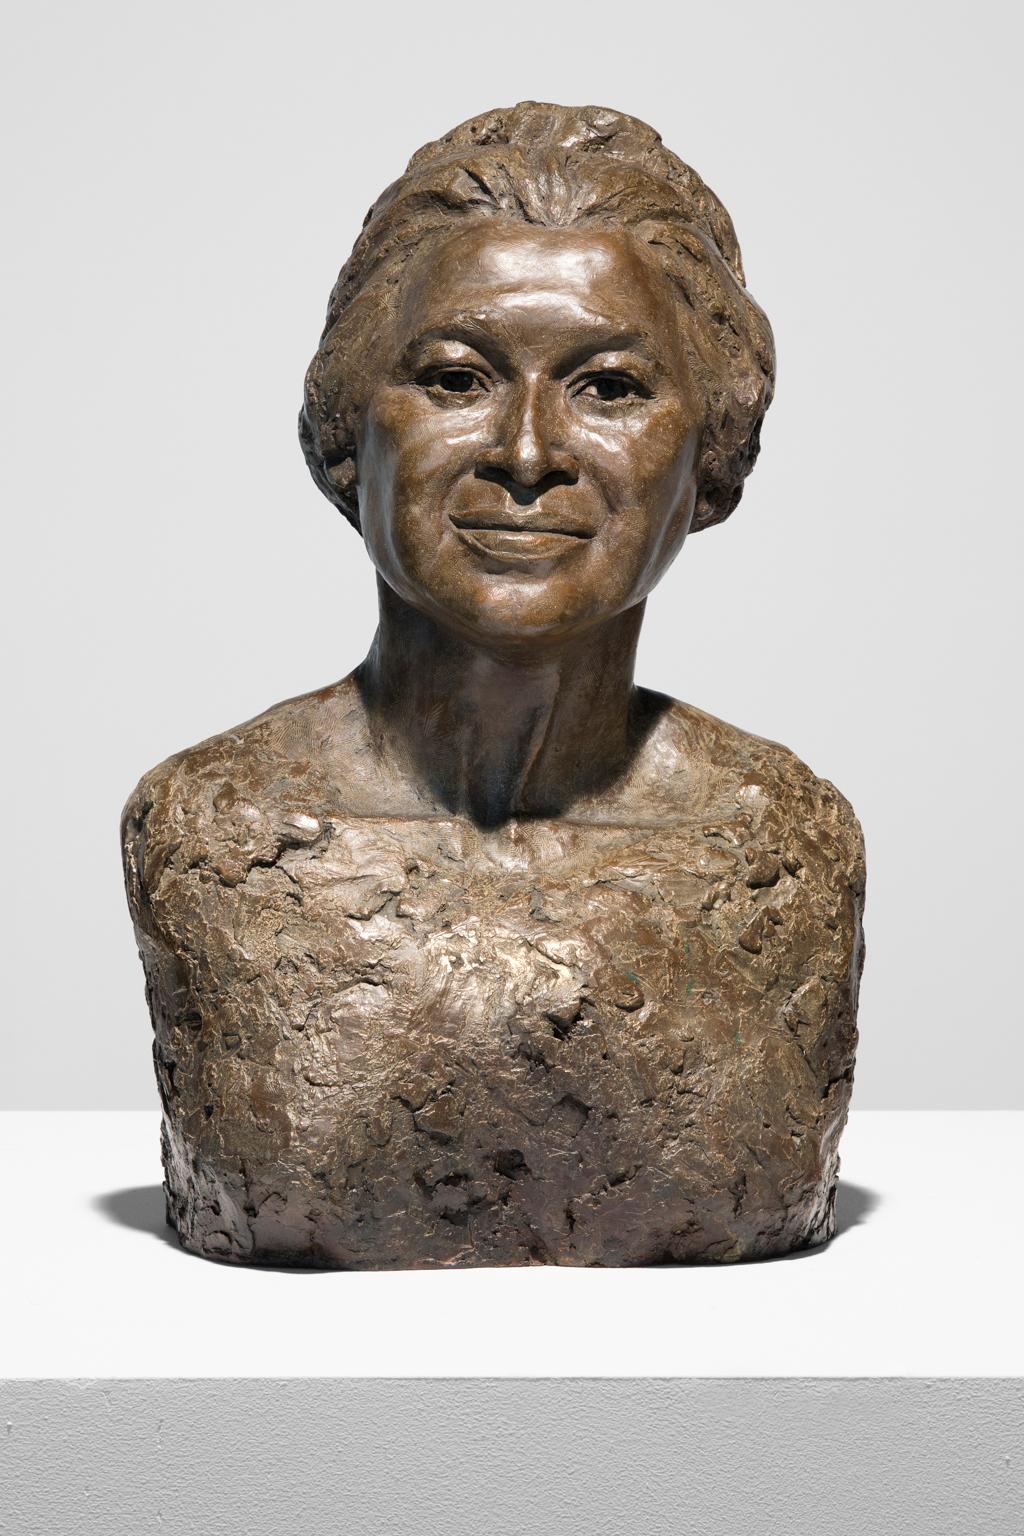 Artis Lane Figurative Sculpture - "Rosa Parks" Bronze Sculpture, Figurative, Female, Portrait